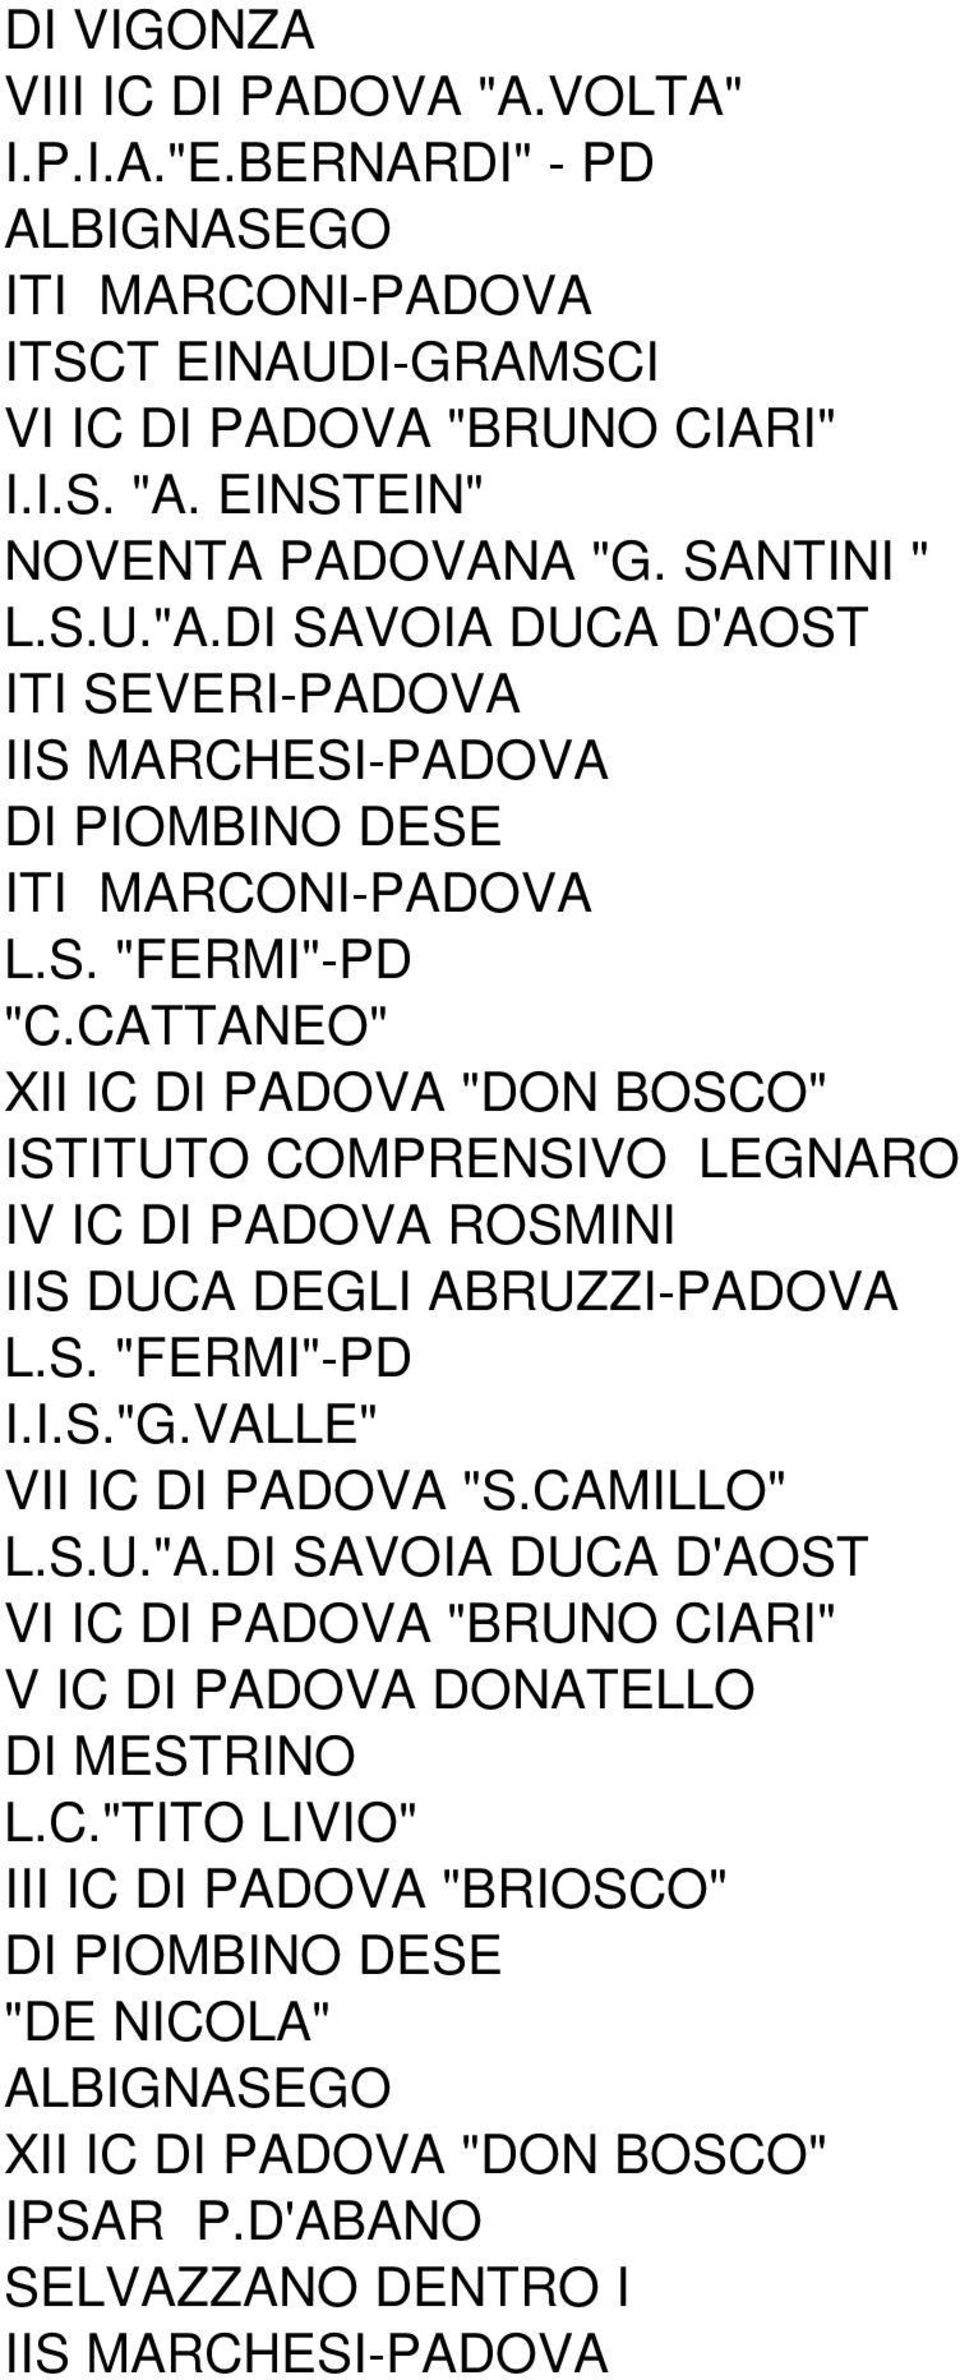 CATTANEO" XII IC DI PADOVA "DON BOSCO" ISTITUTO COMPRENSIVO LEGNARO IV IC DI PADOVA ROSMINI IIS DUCA DEGLI ABRUZZI-PADOVA I.I.S."G.VALLE" VII IC DI PADOVA "S.CAMILLO" L.S.U."A.